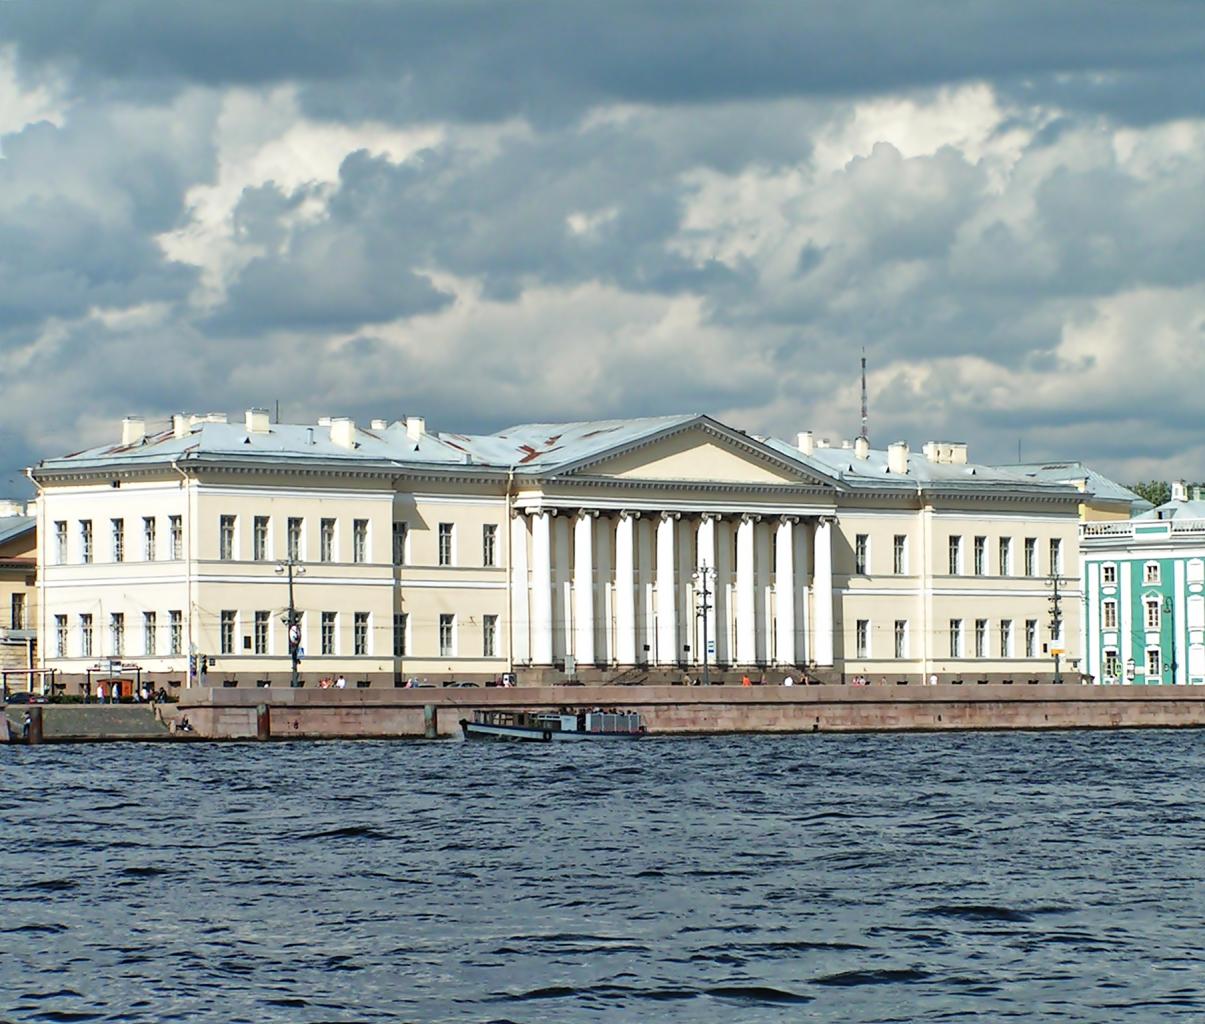 1 учреждение академии наук в петербурге